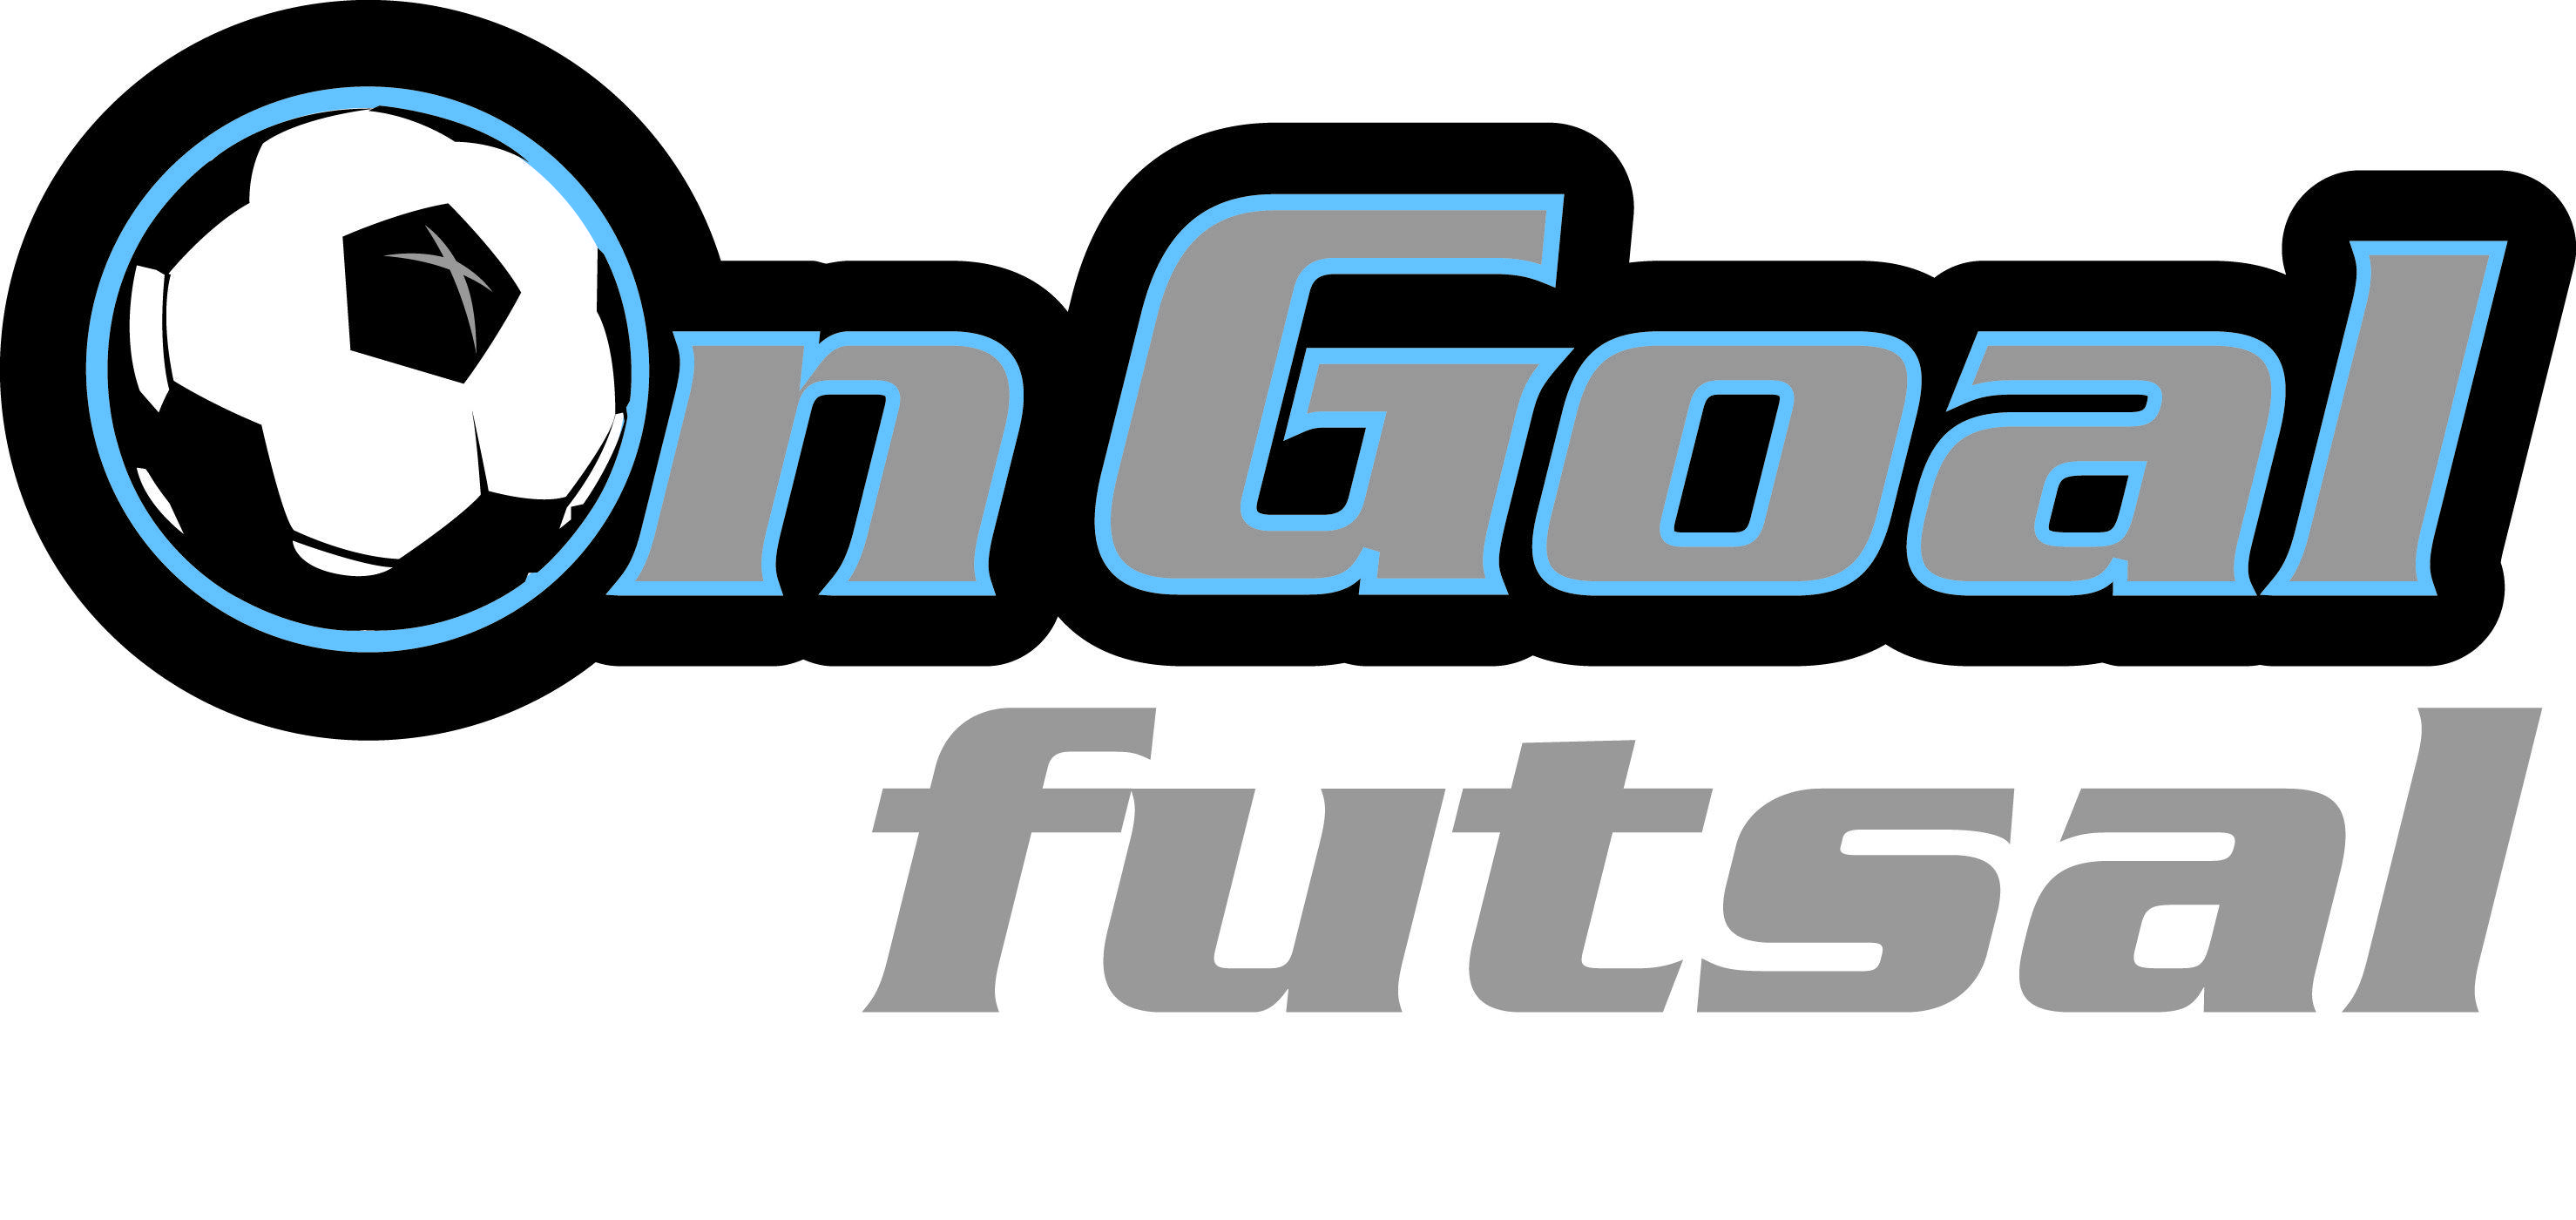 Goal Logo - On Goal Soccer